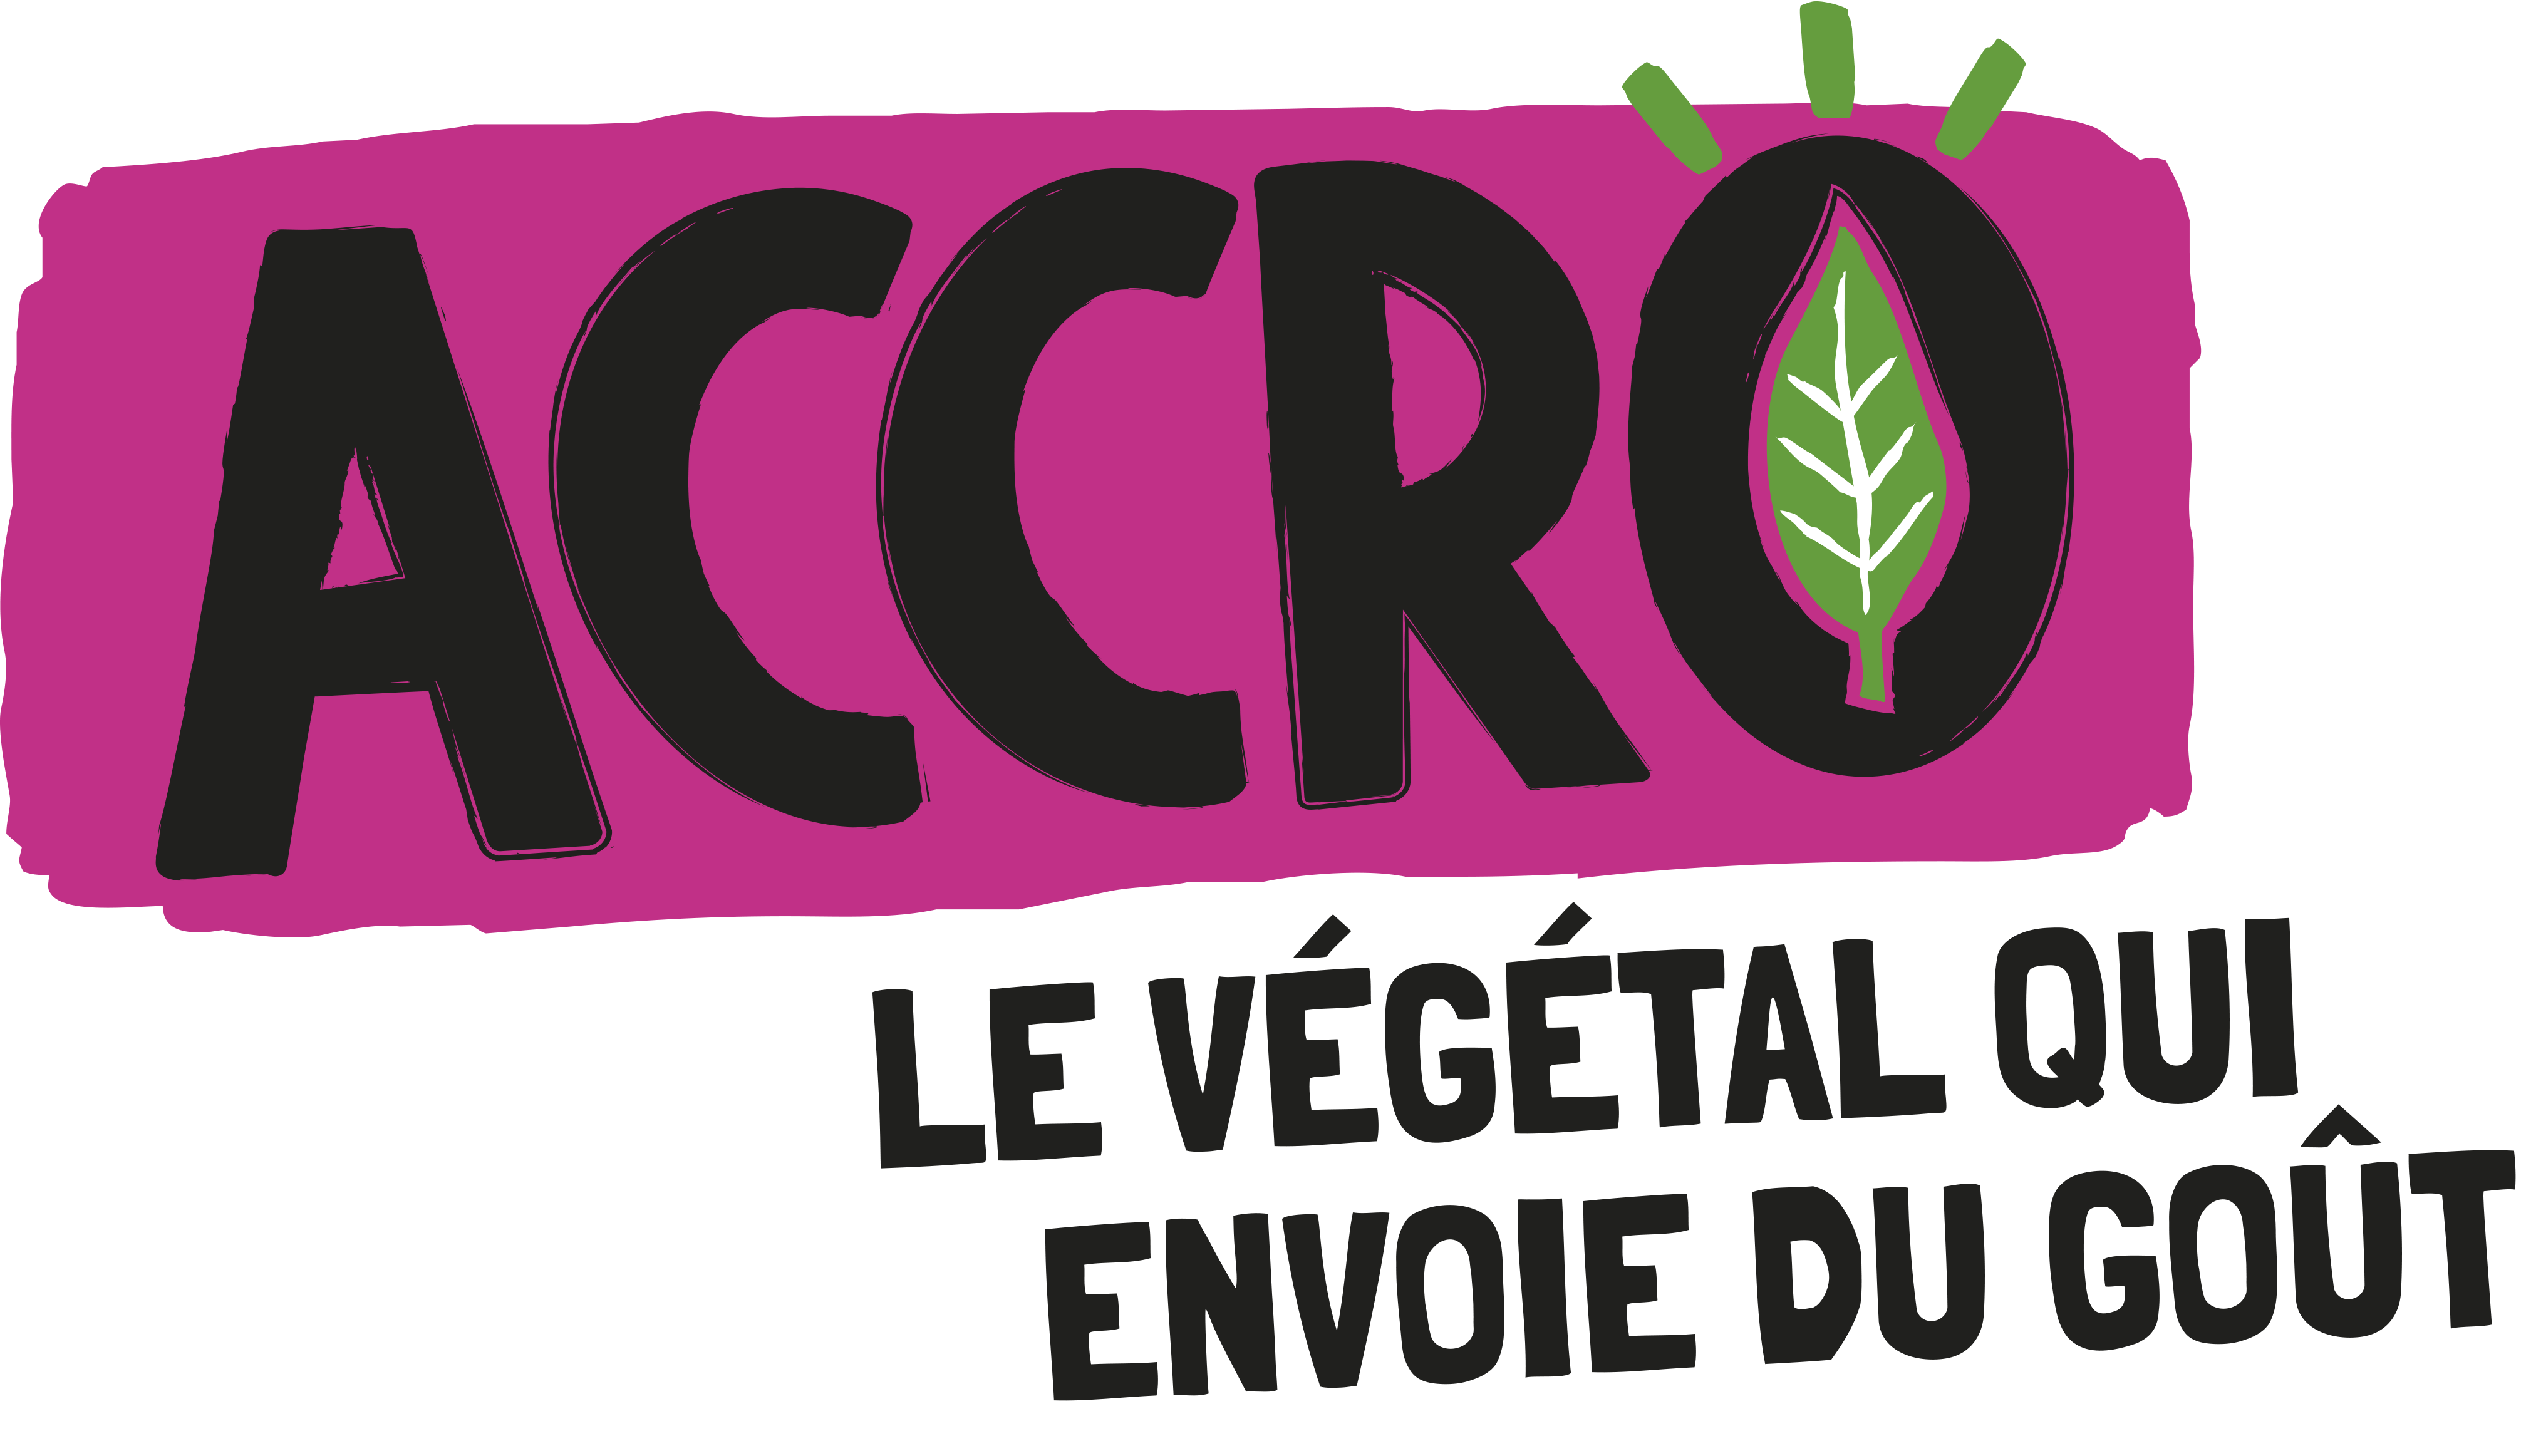 NxtFood lance Accro sa marque de steak végétal chez Chronodrive